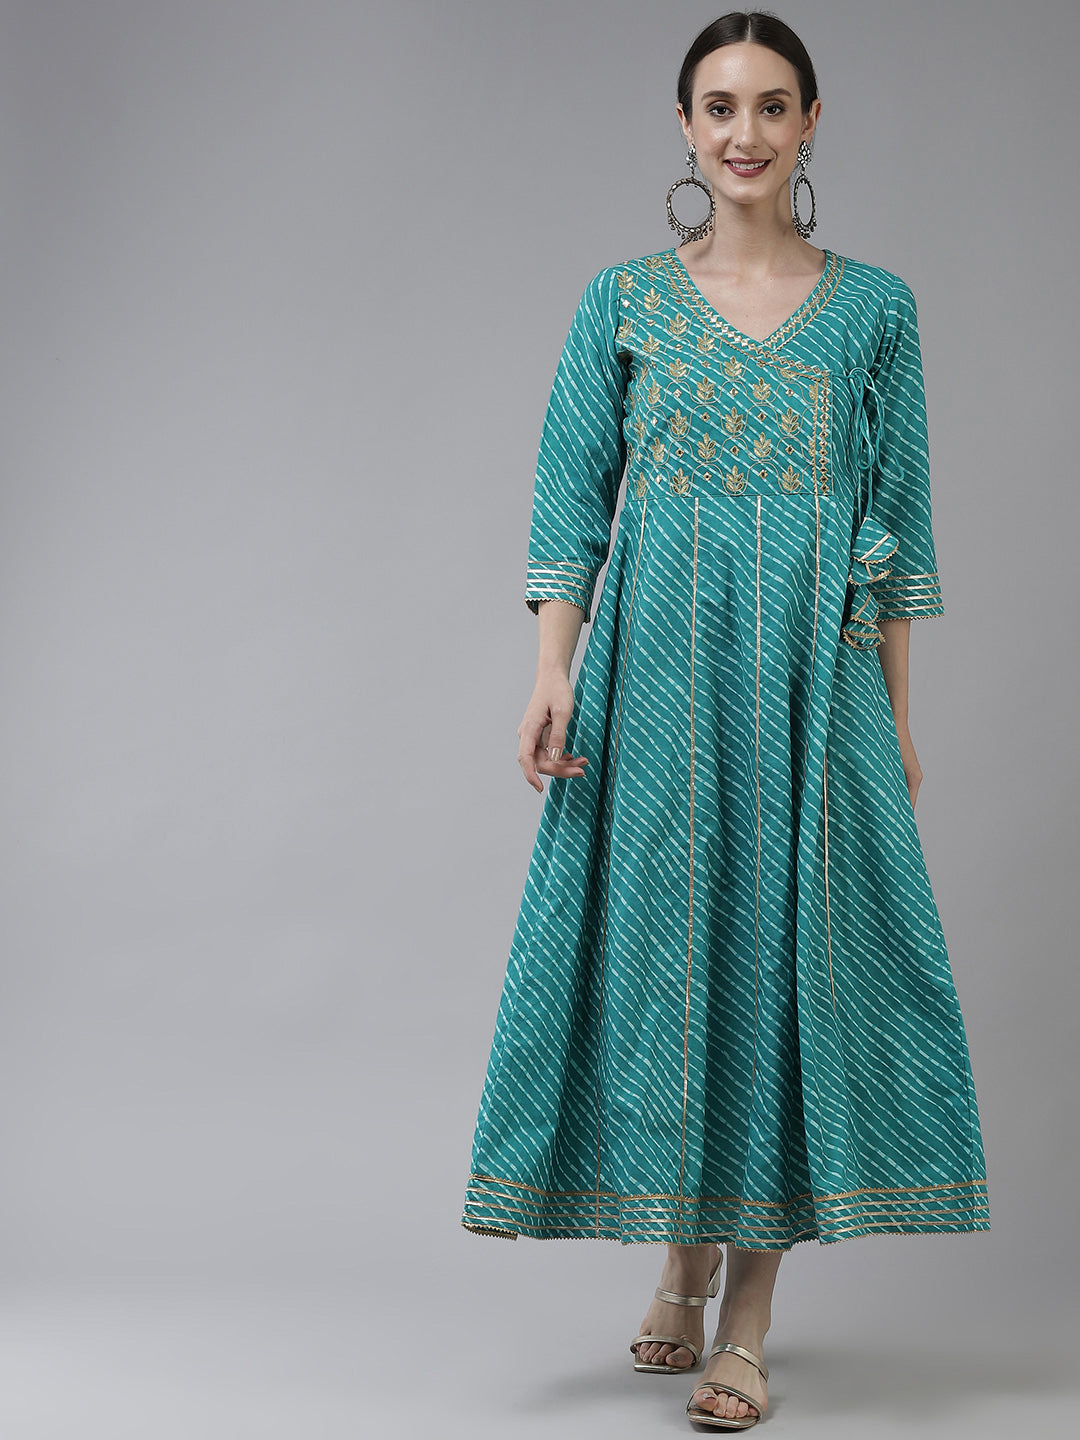 Sea Green Ethnic Motifs Maxi Dress-Yufta Store-9778DRSSGS